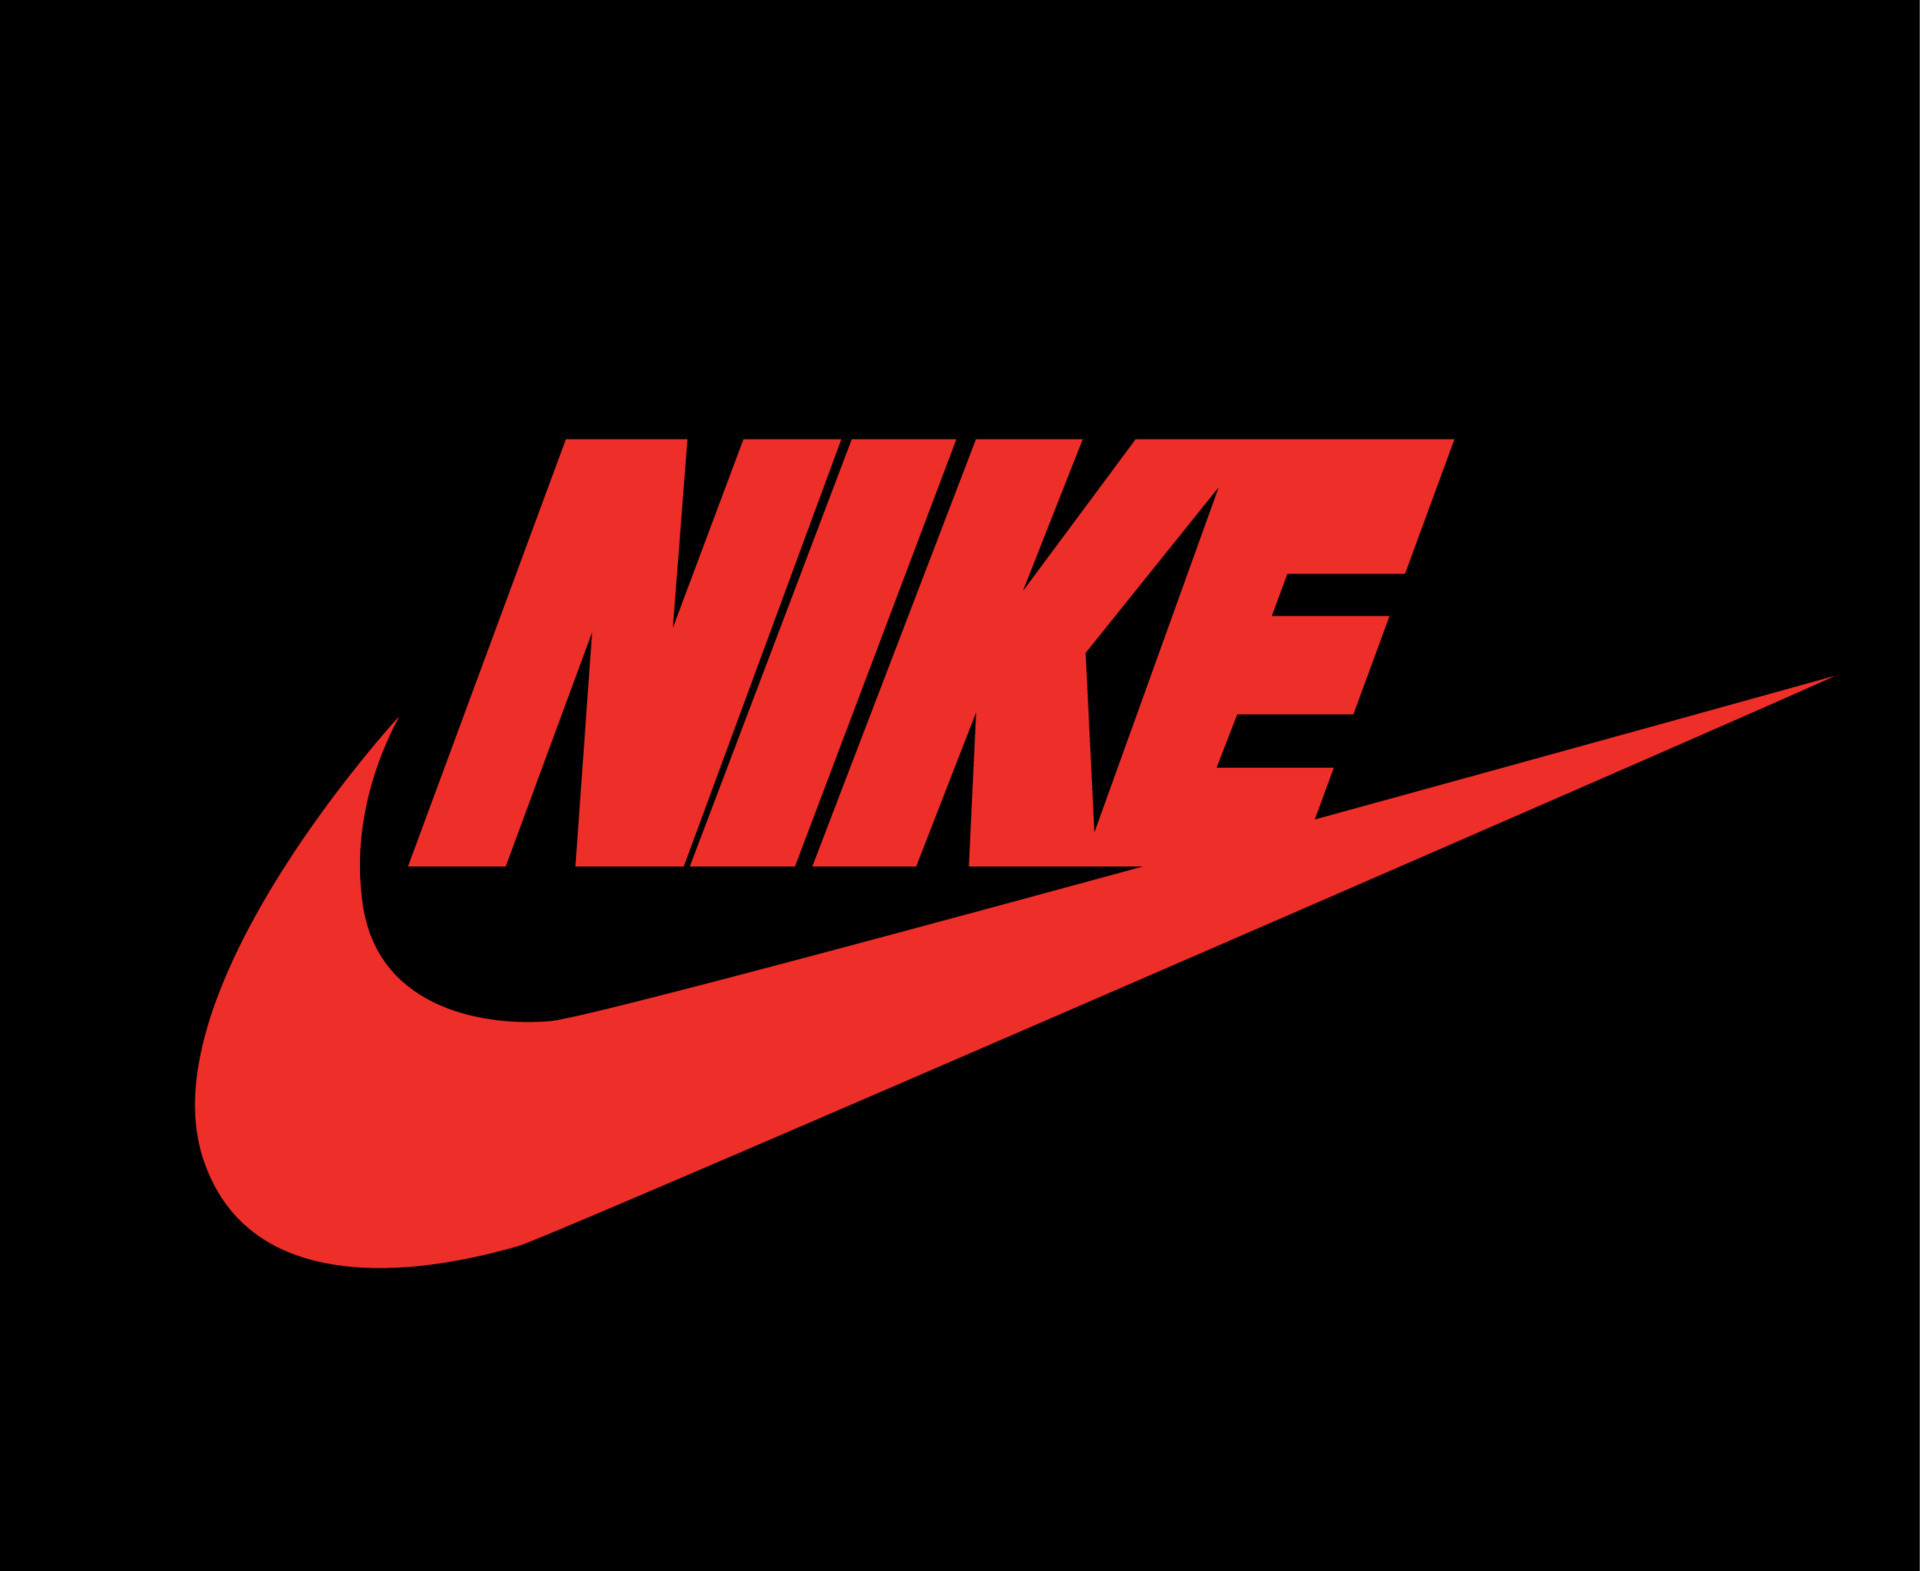 Vergevingsgezind Ga naar het circuit Onbelangrijk Nike logo rood met naam kleren ontwerp icoon abstract Amerikaans voetbal  vector illustratie met zwart achtergrond 10994329 Vectorkunst bij Vecteezy